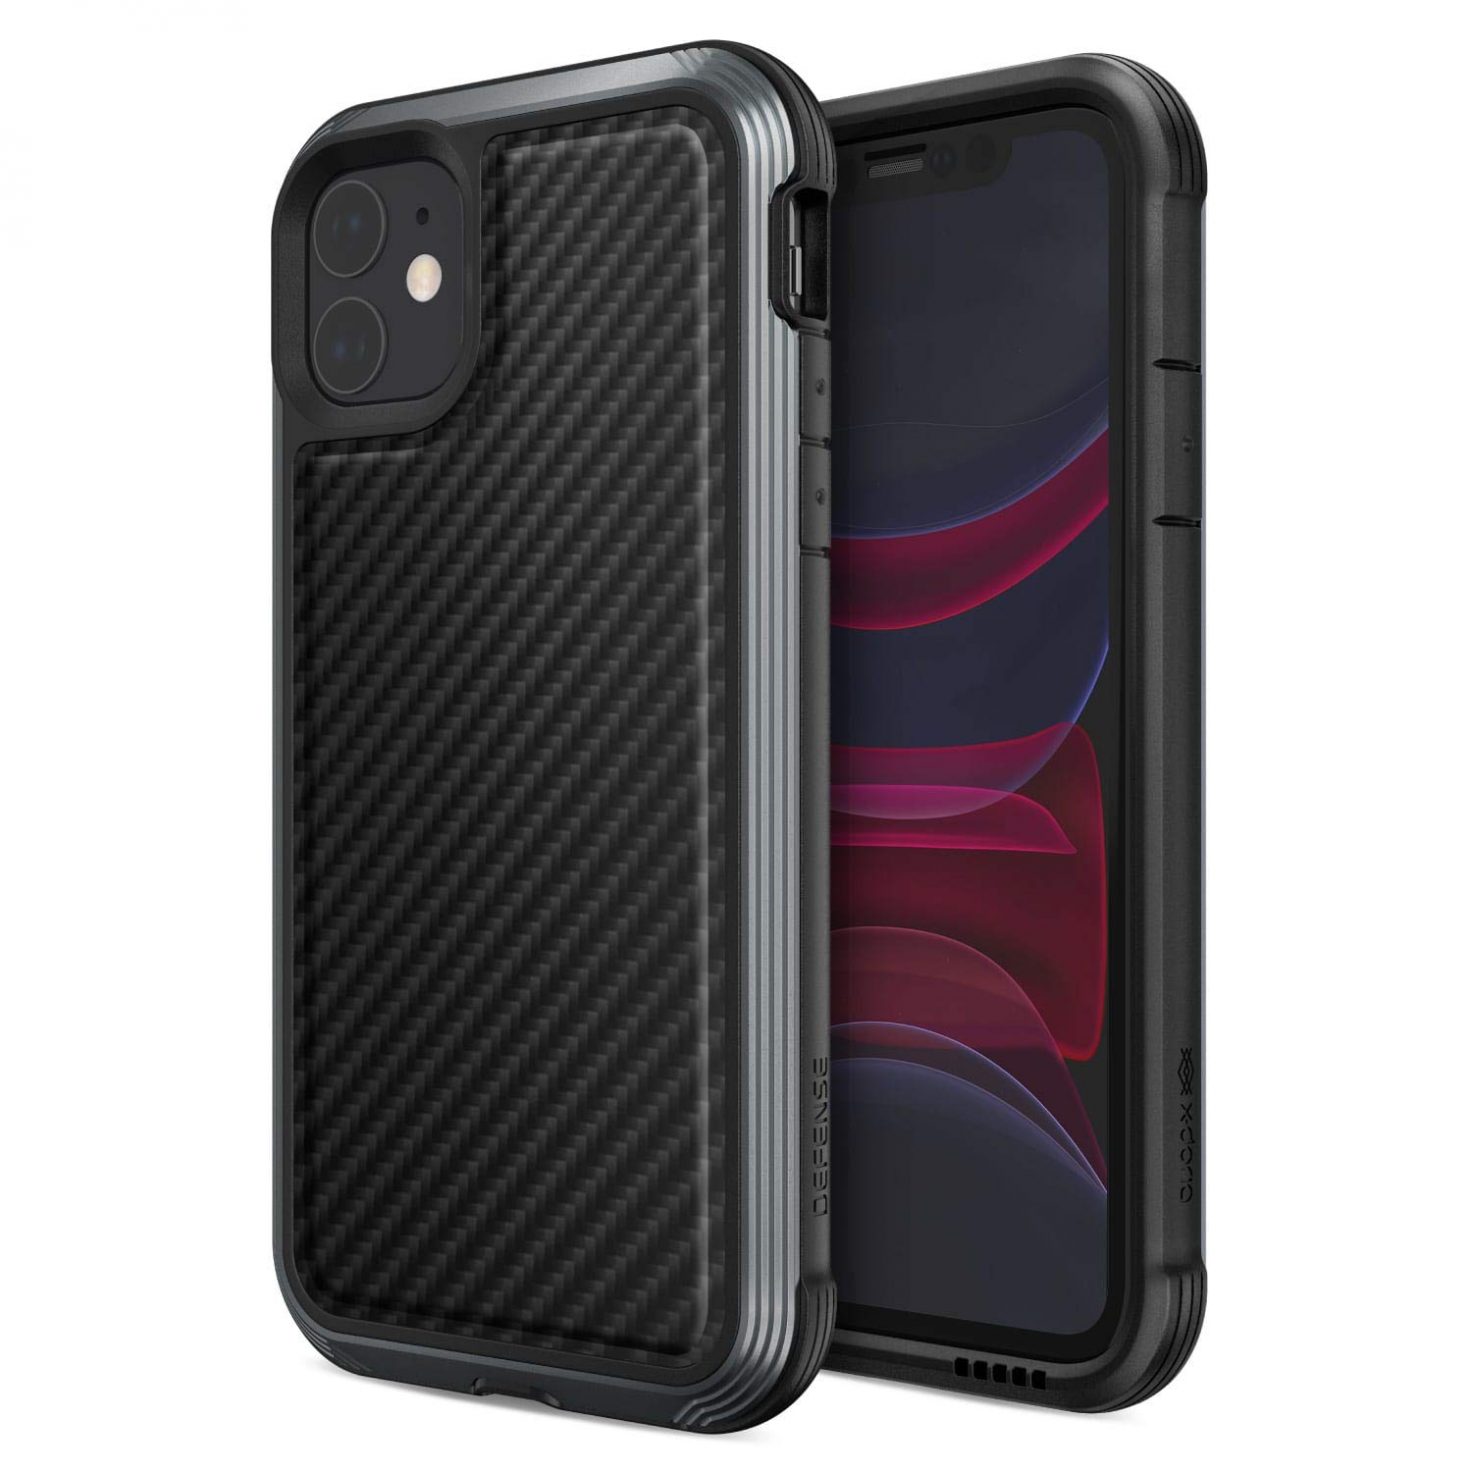 X-doria-iPhone-11-carbon-case-1472×1472